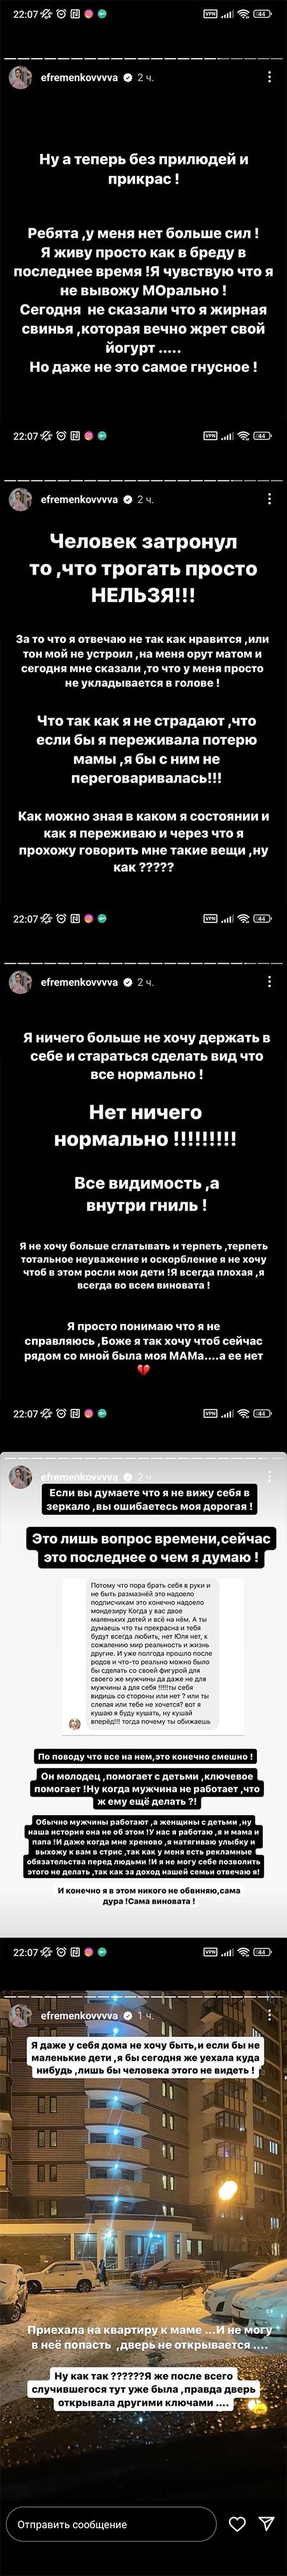 Пост Юлии Ефременковой вконтакте